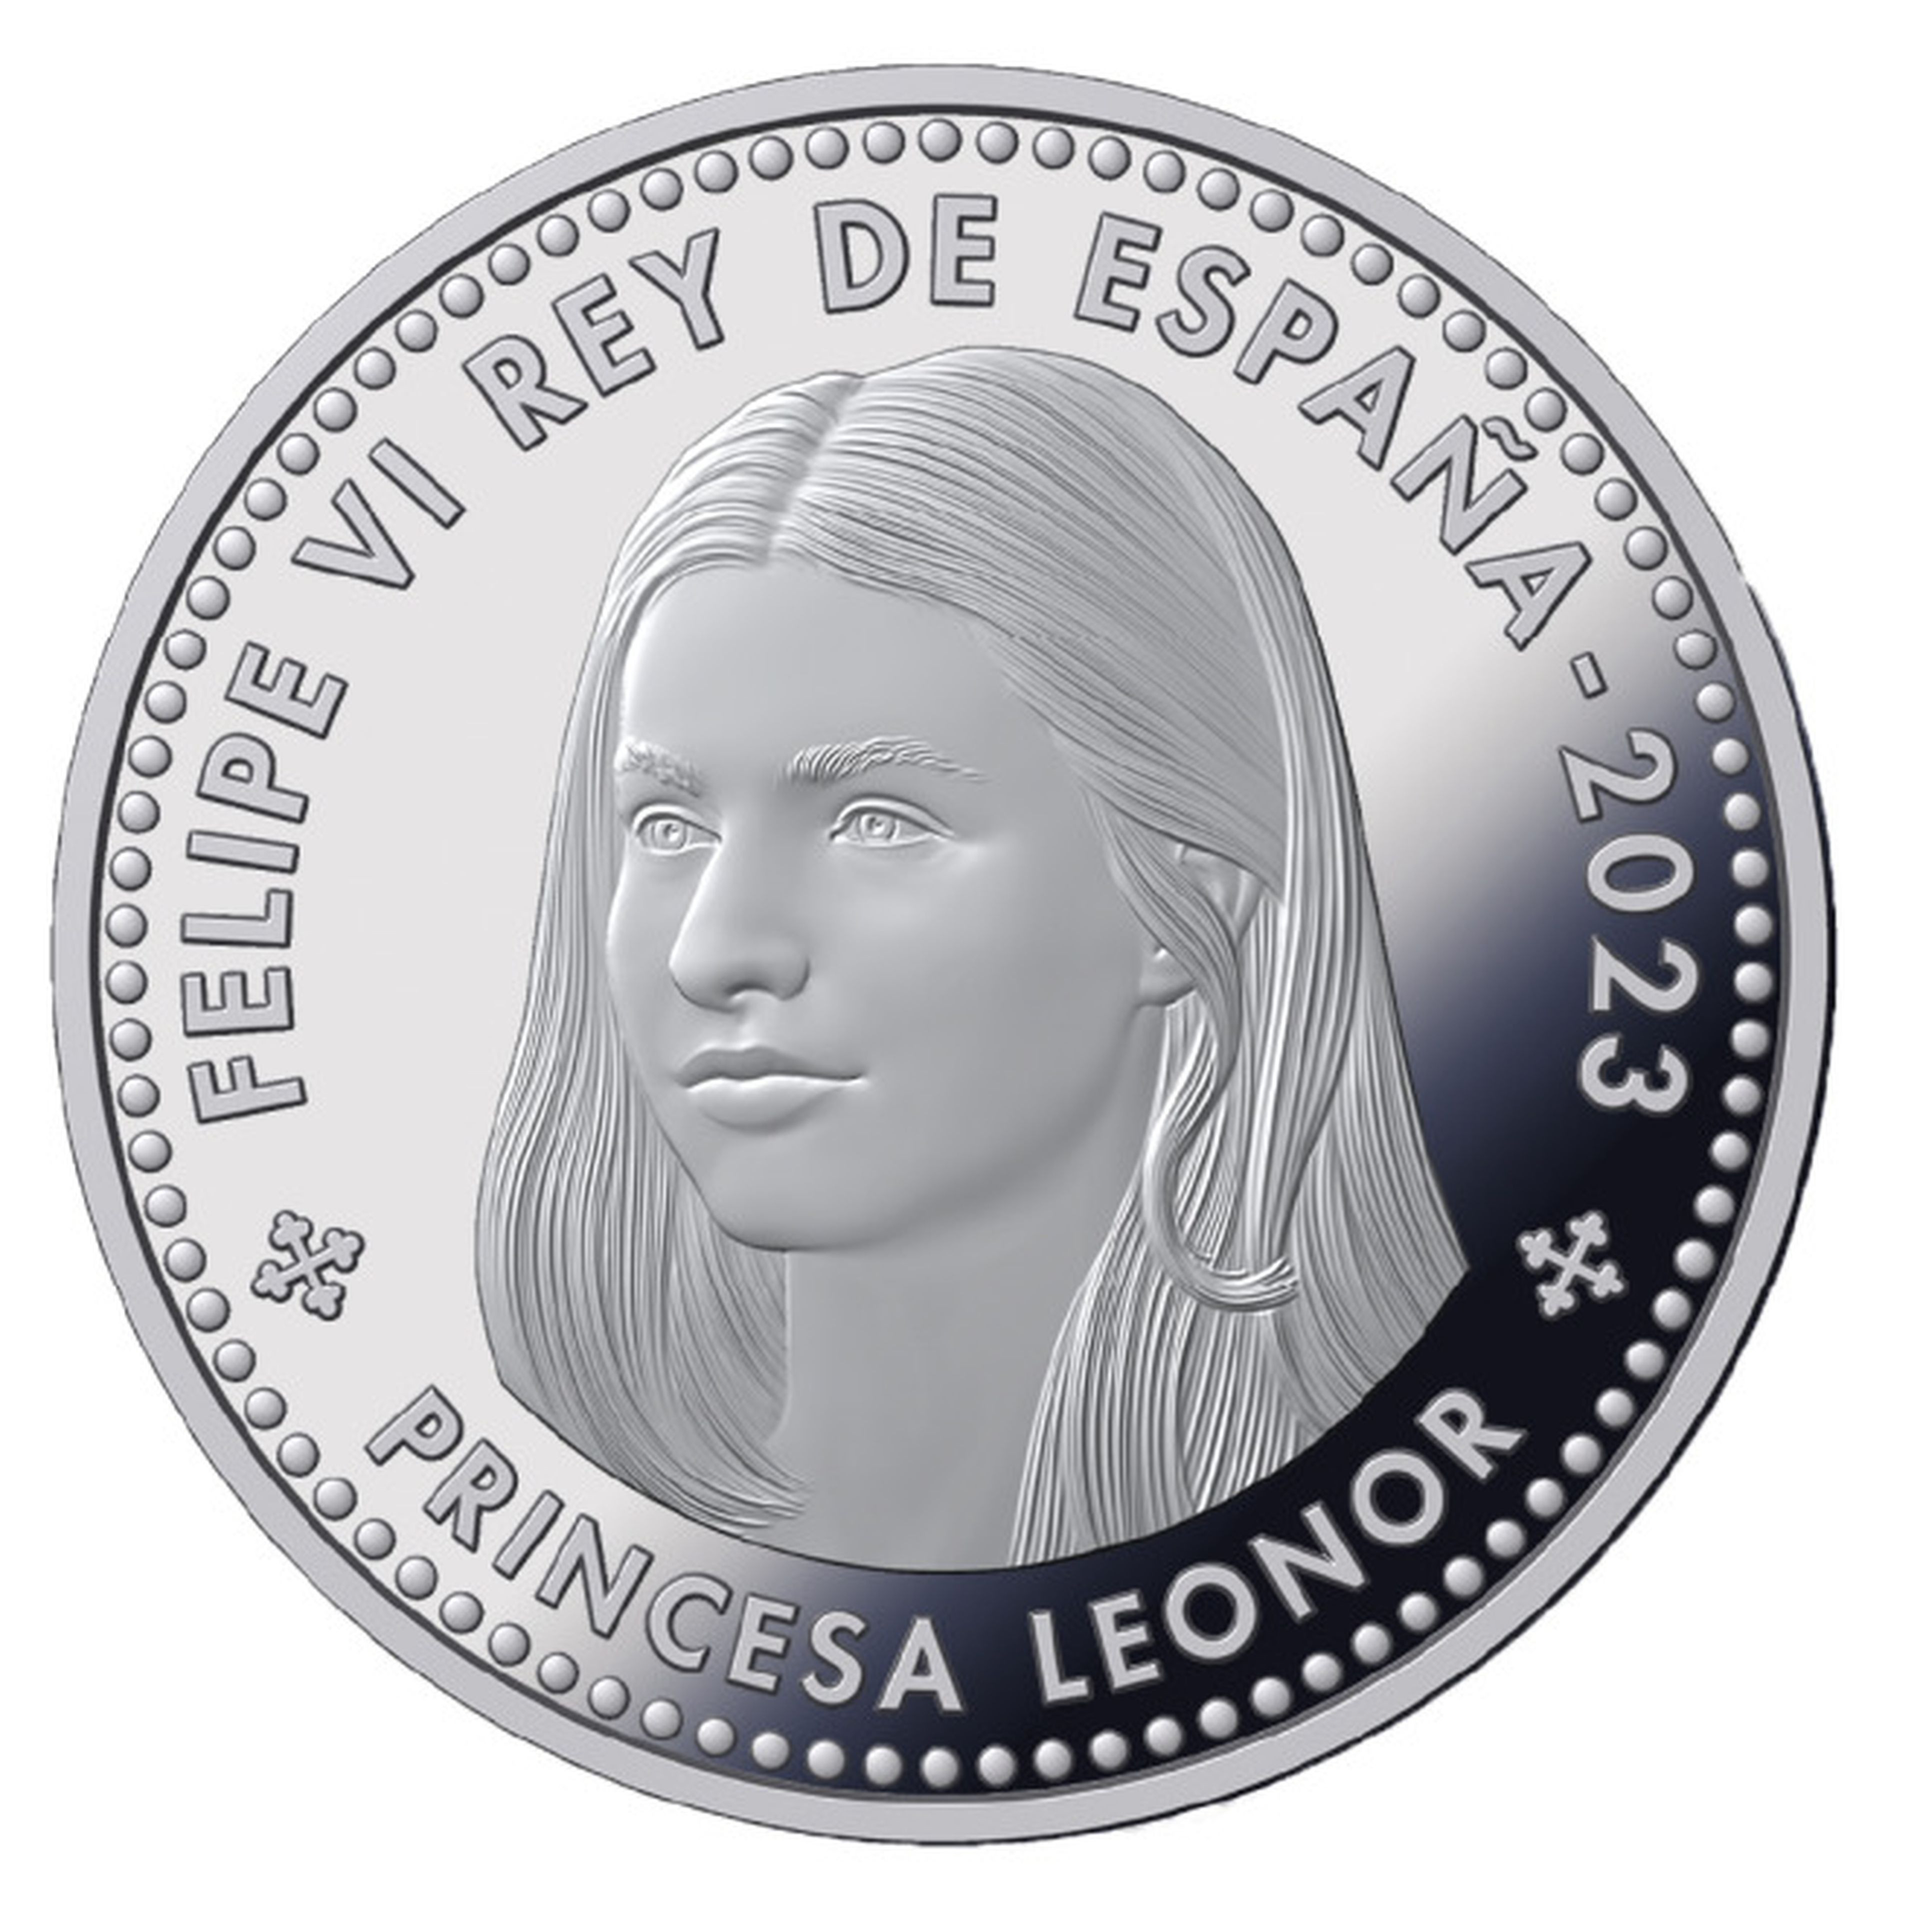 Imagen de la moneda de la princesa Leonor.